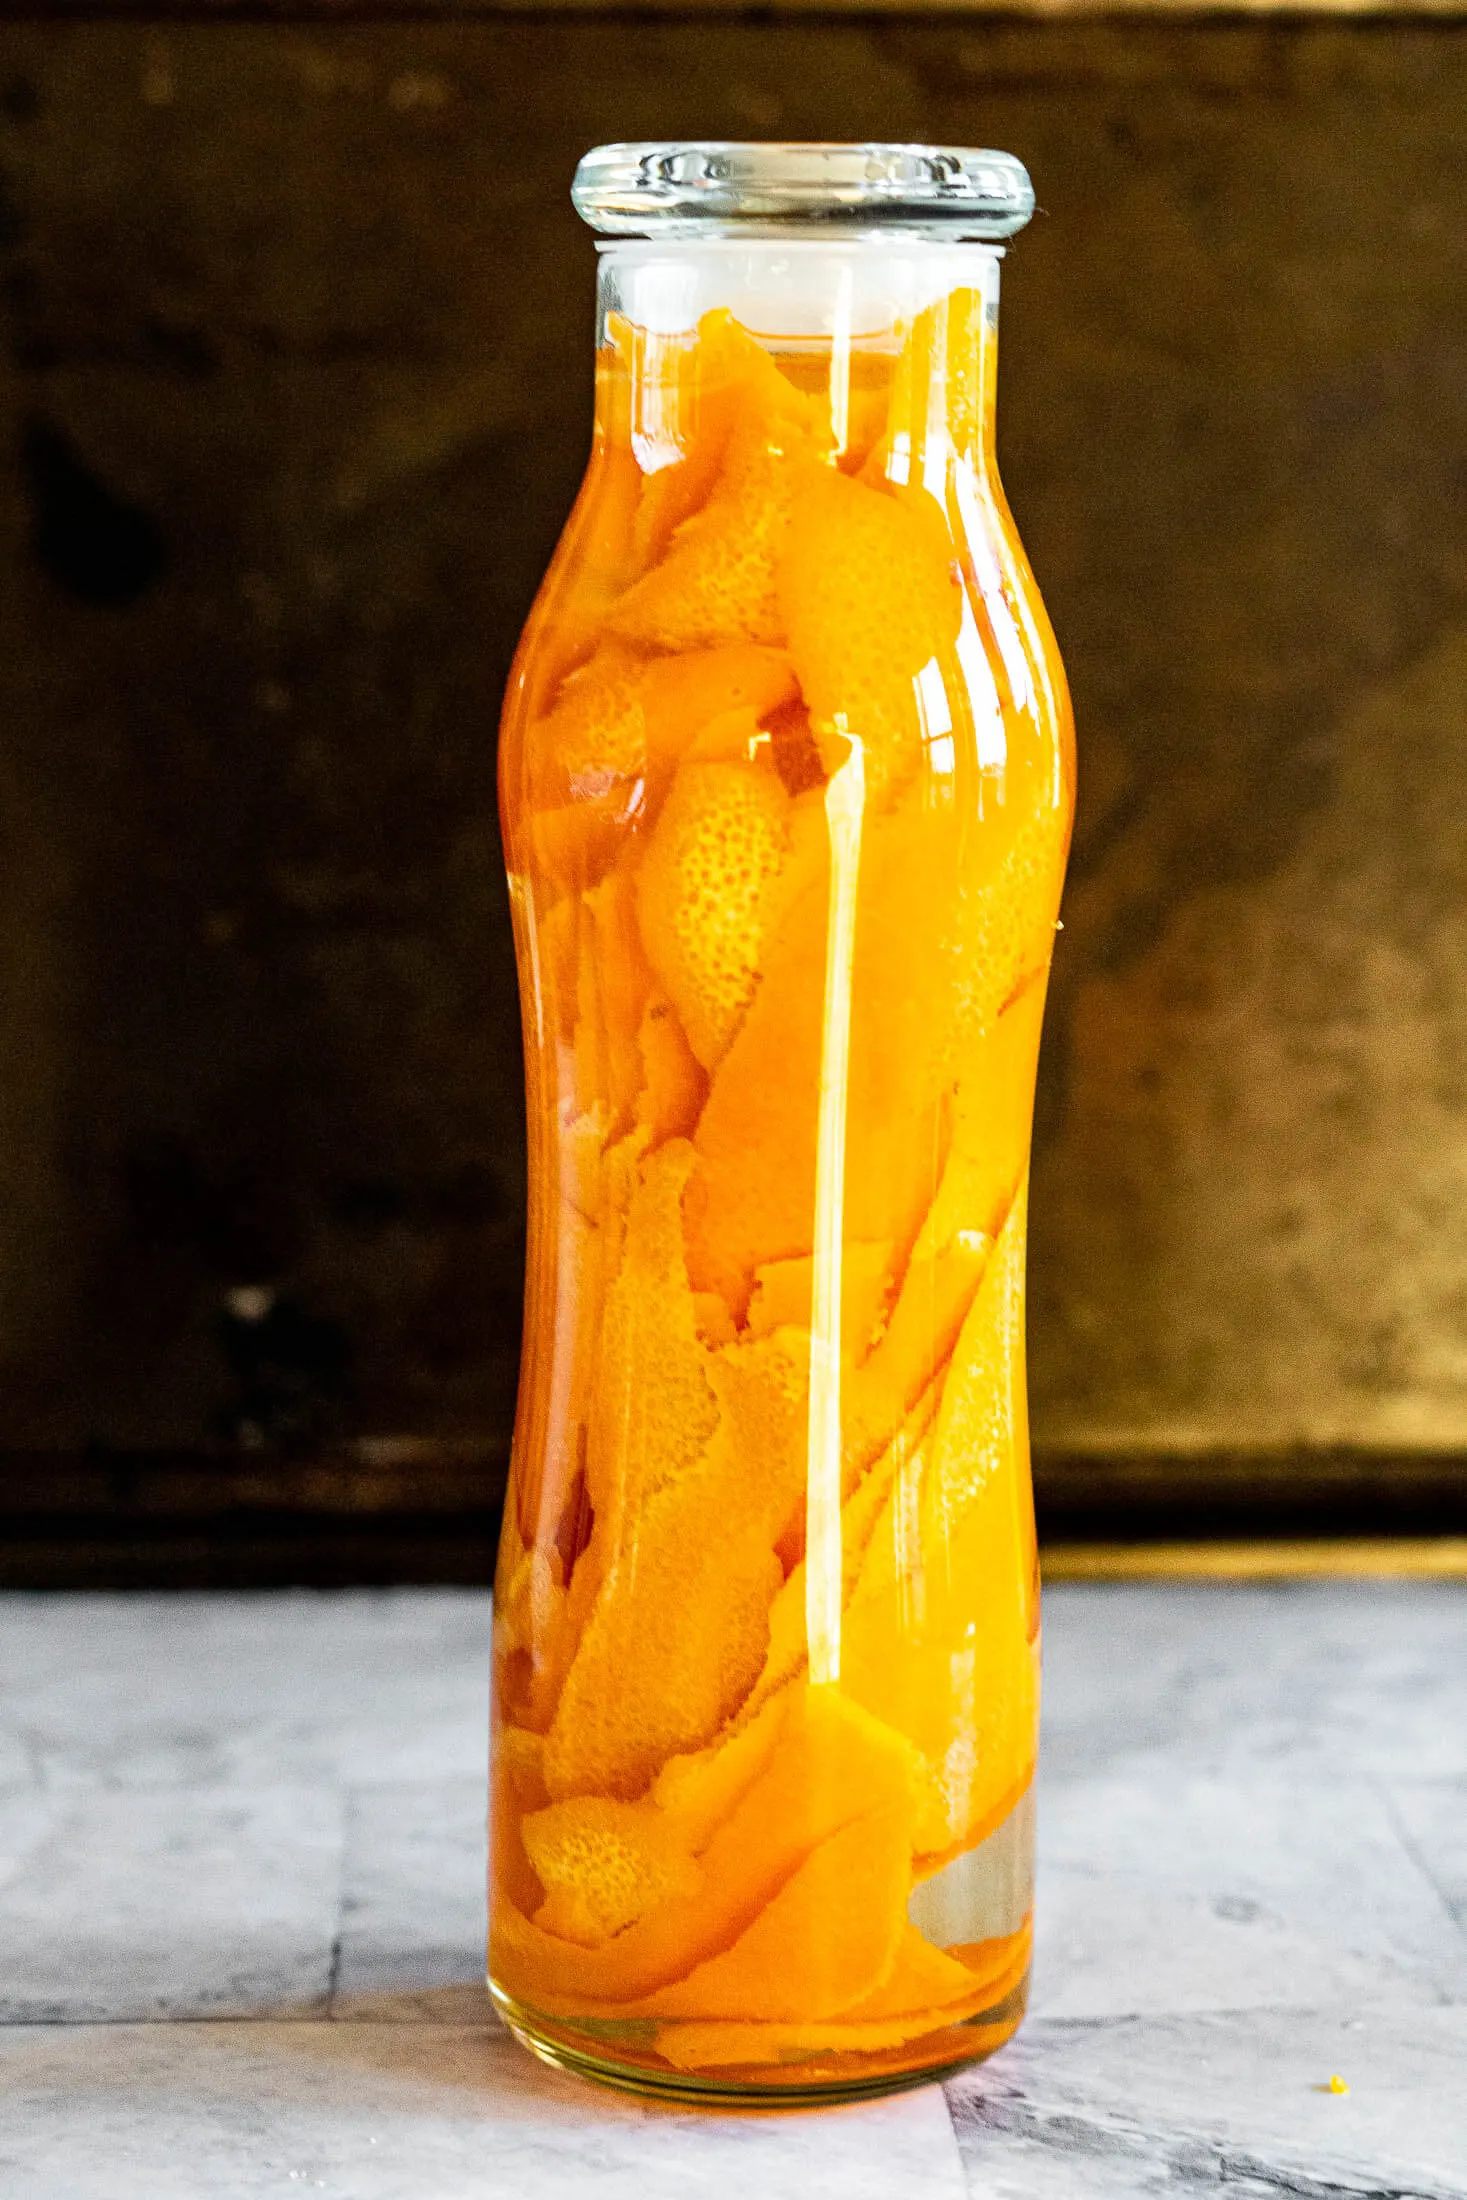 Steeping orange vinegar.